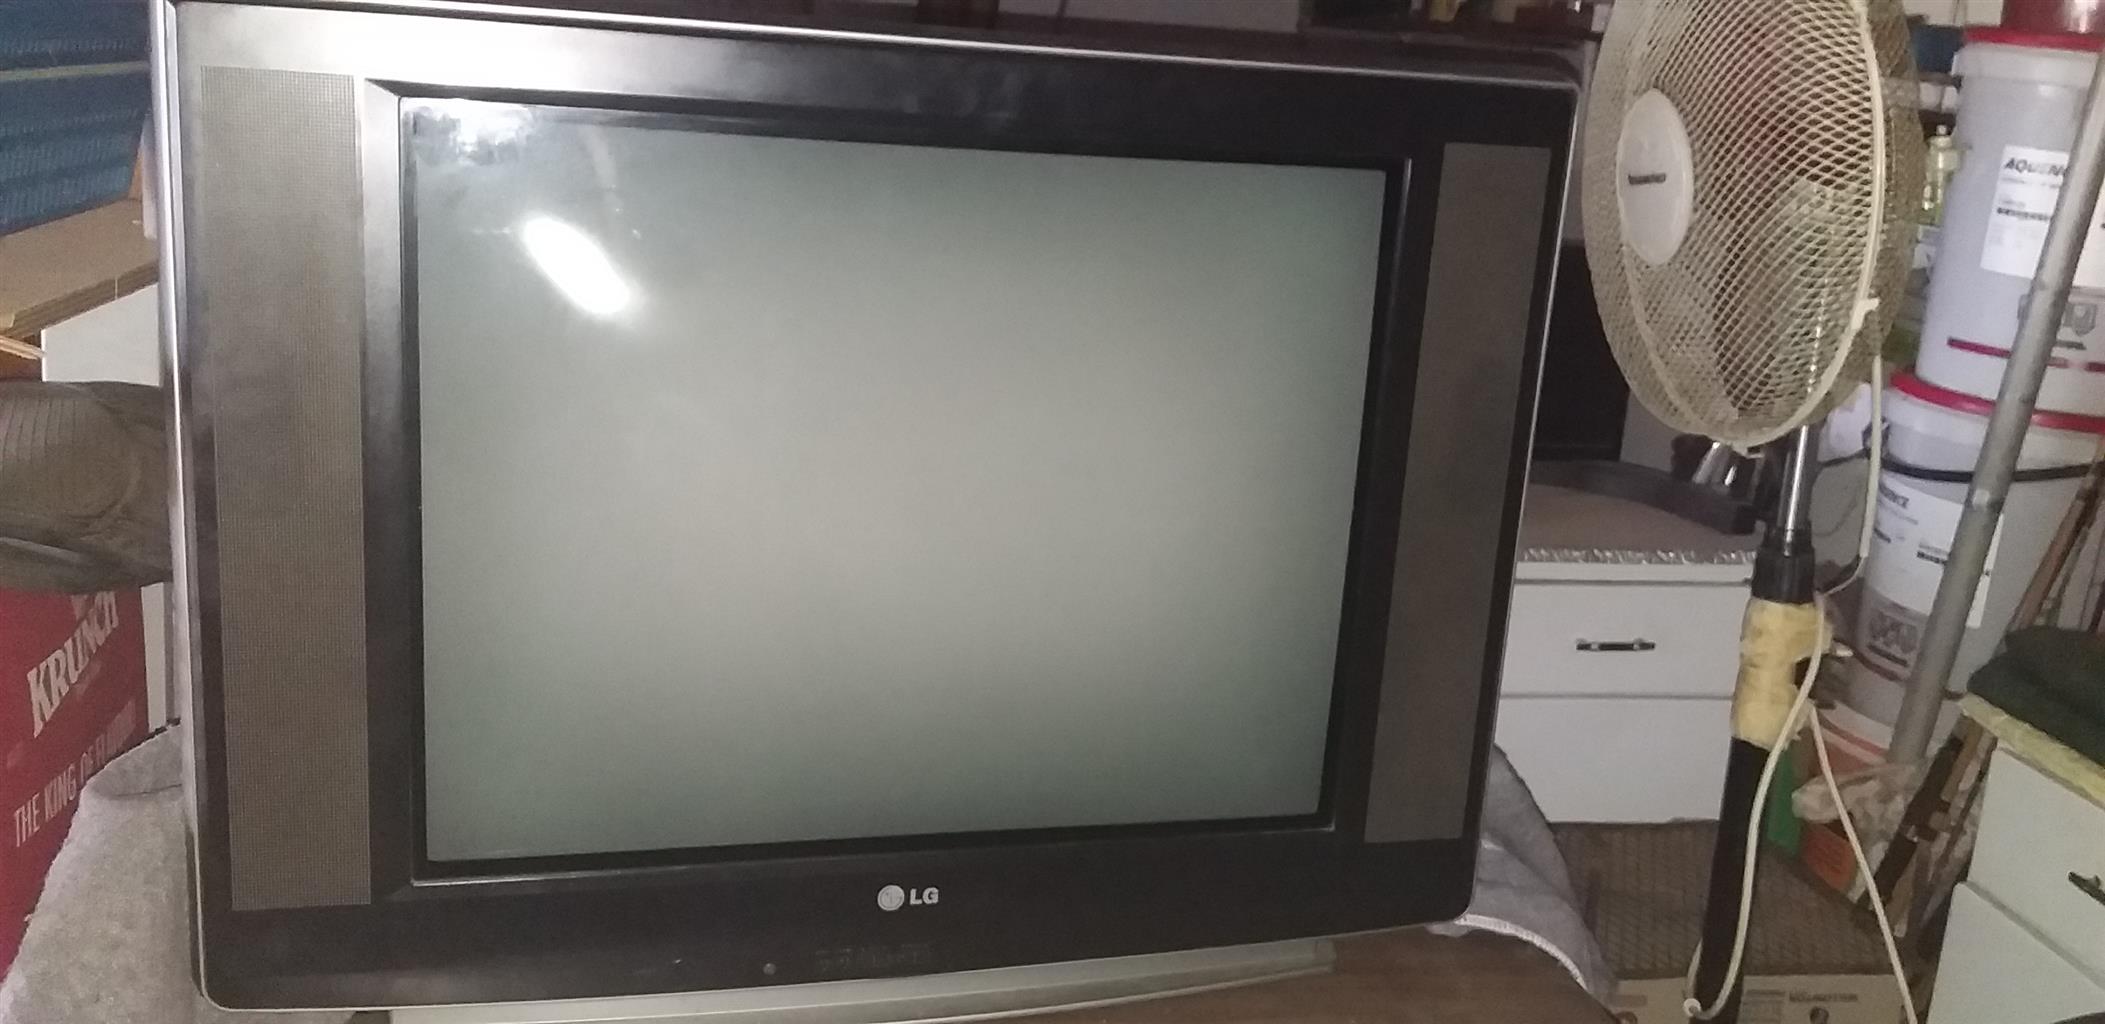 LG 74cm box tv